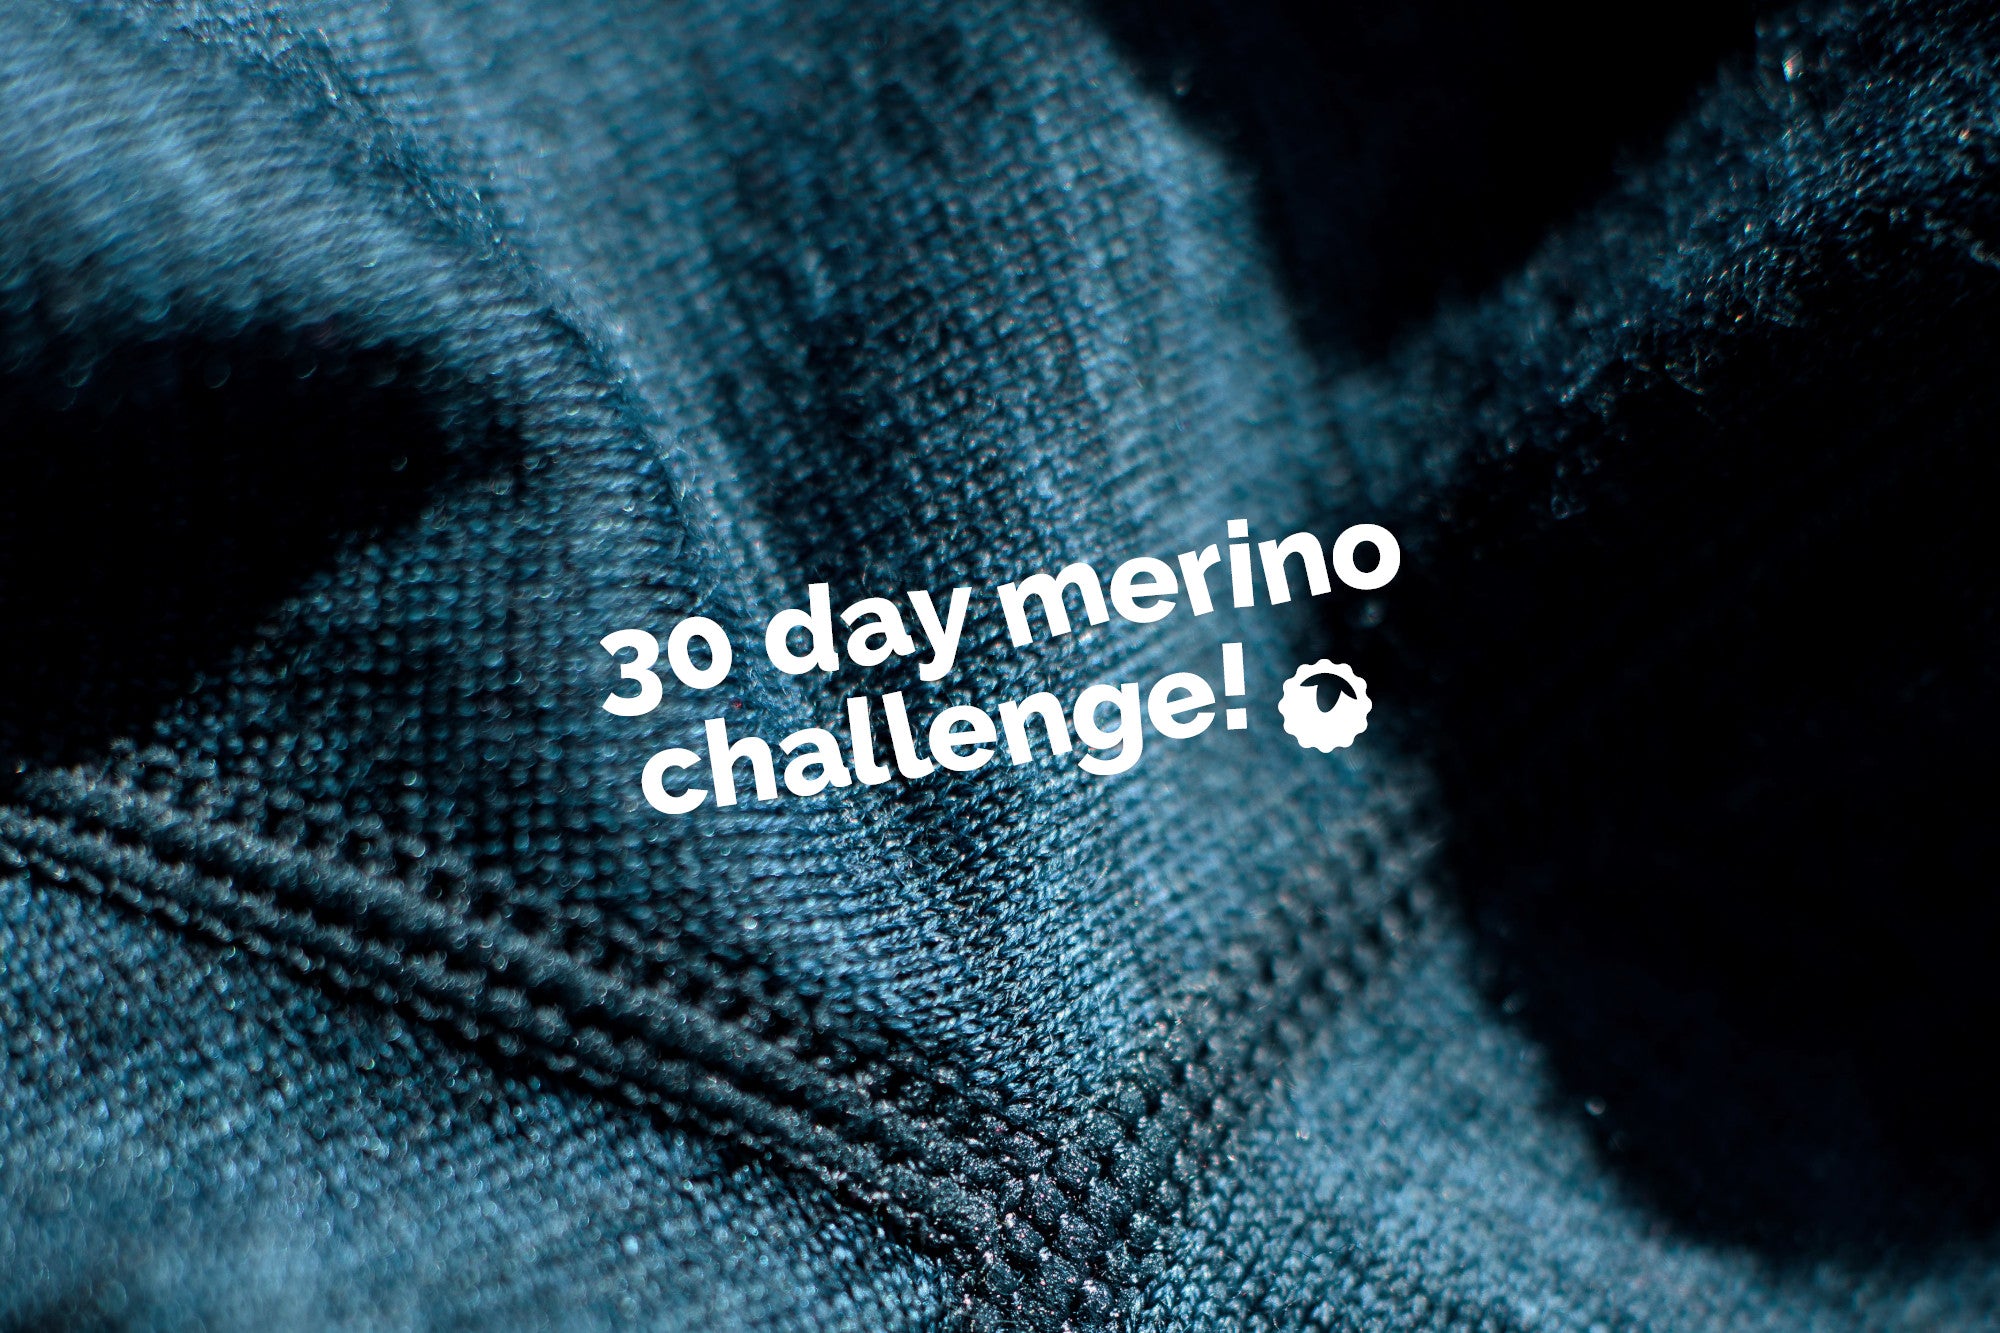 30 Day Merino Challenge: Tara's Journey